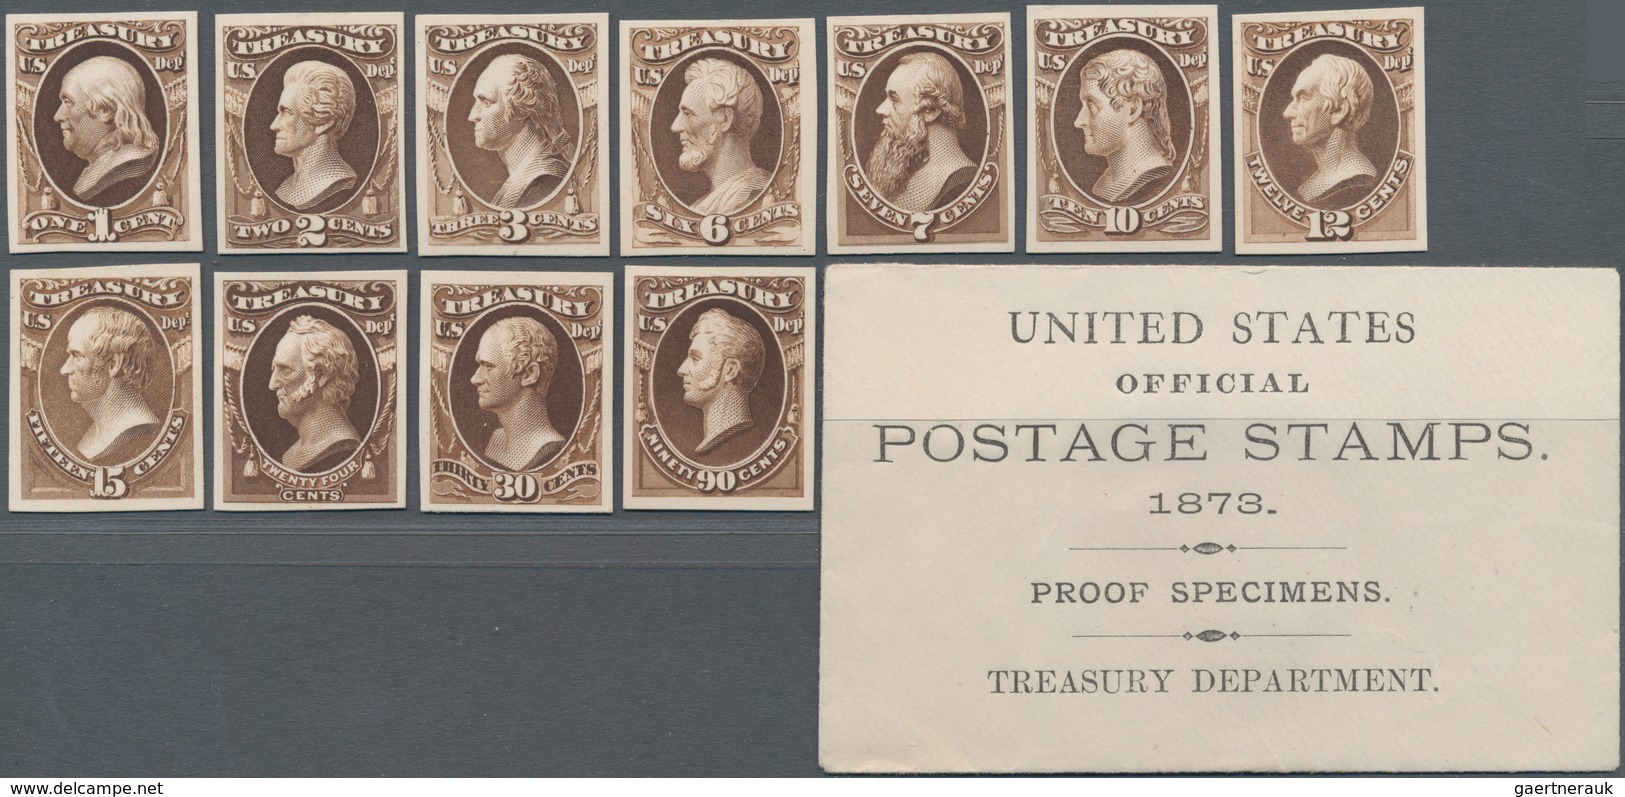 Vereinigte Staaten von Amerika - Dienstmarken: Officials Plate Proofs on Card (Scott O1P4-O93P4), Co